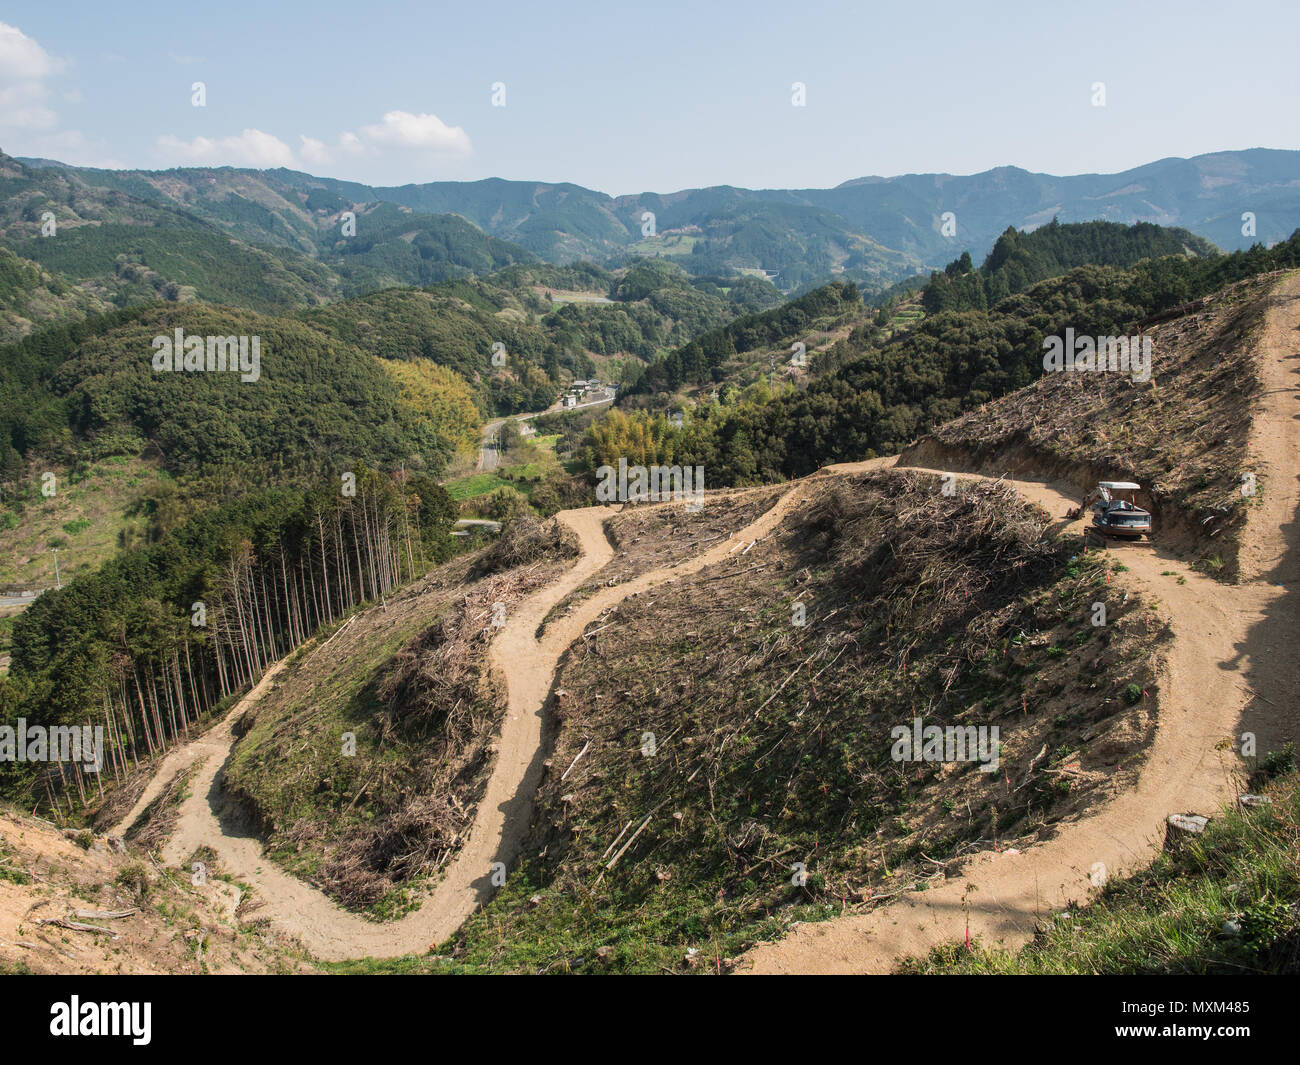 Japan forestry. Sugi plantation forest after harvest, rural landscape, Shikoku, Japan Stock Photo